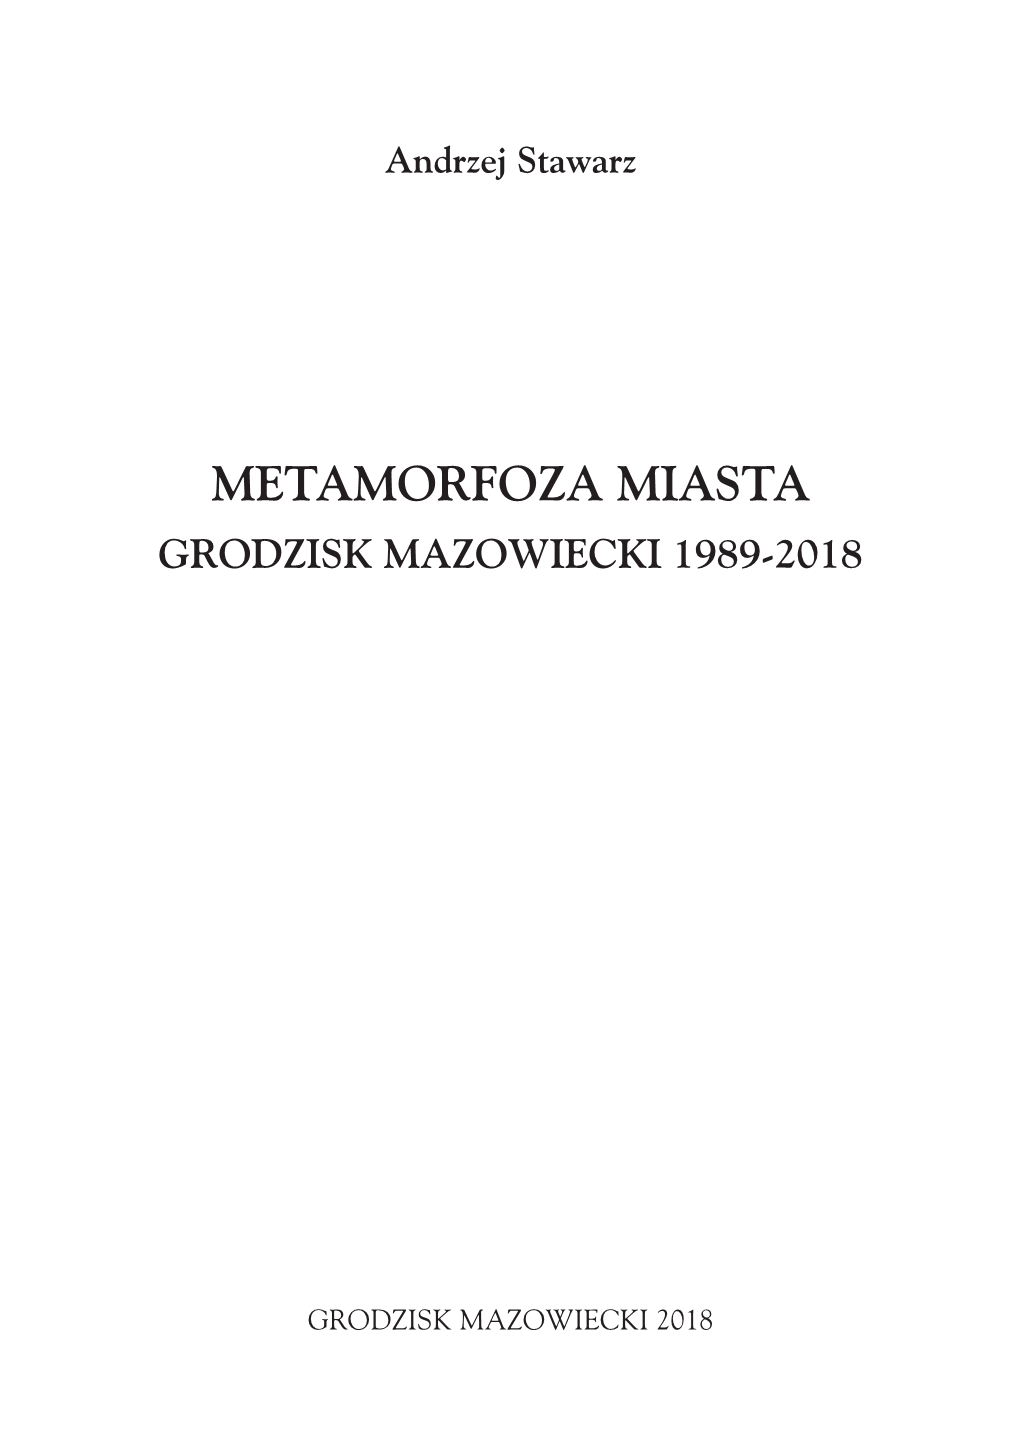 Metamorfoza Miasta Grodzisk Mazowiecki 1989-2018